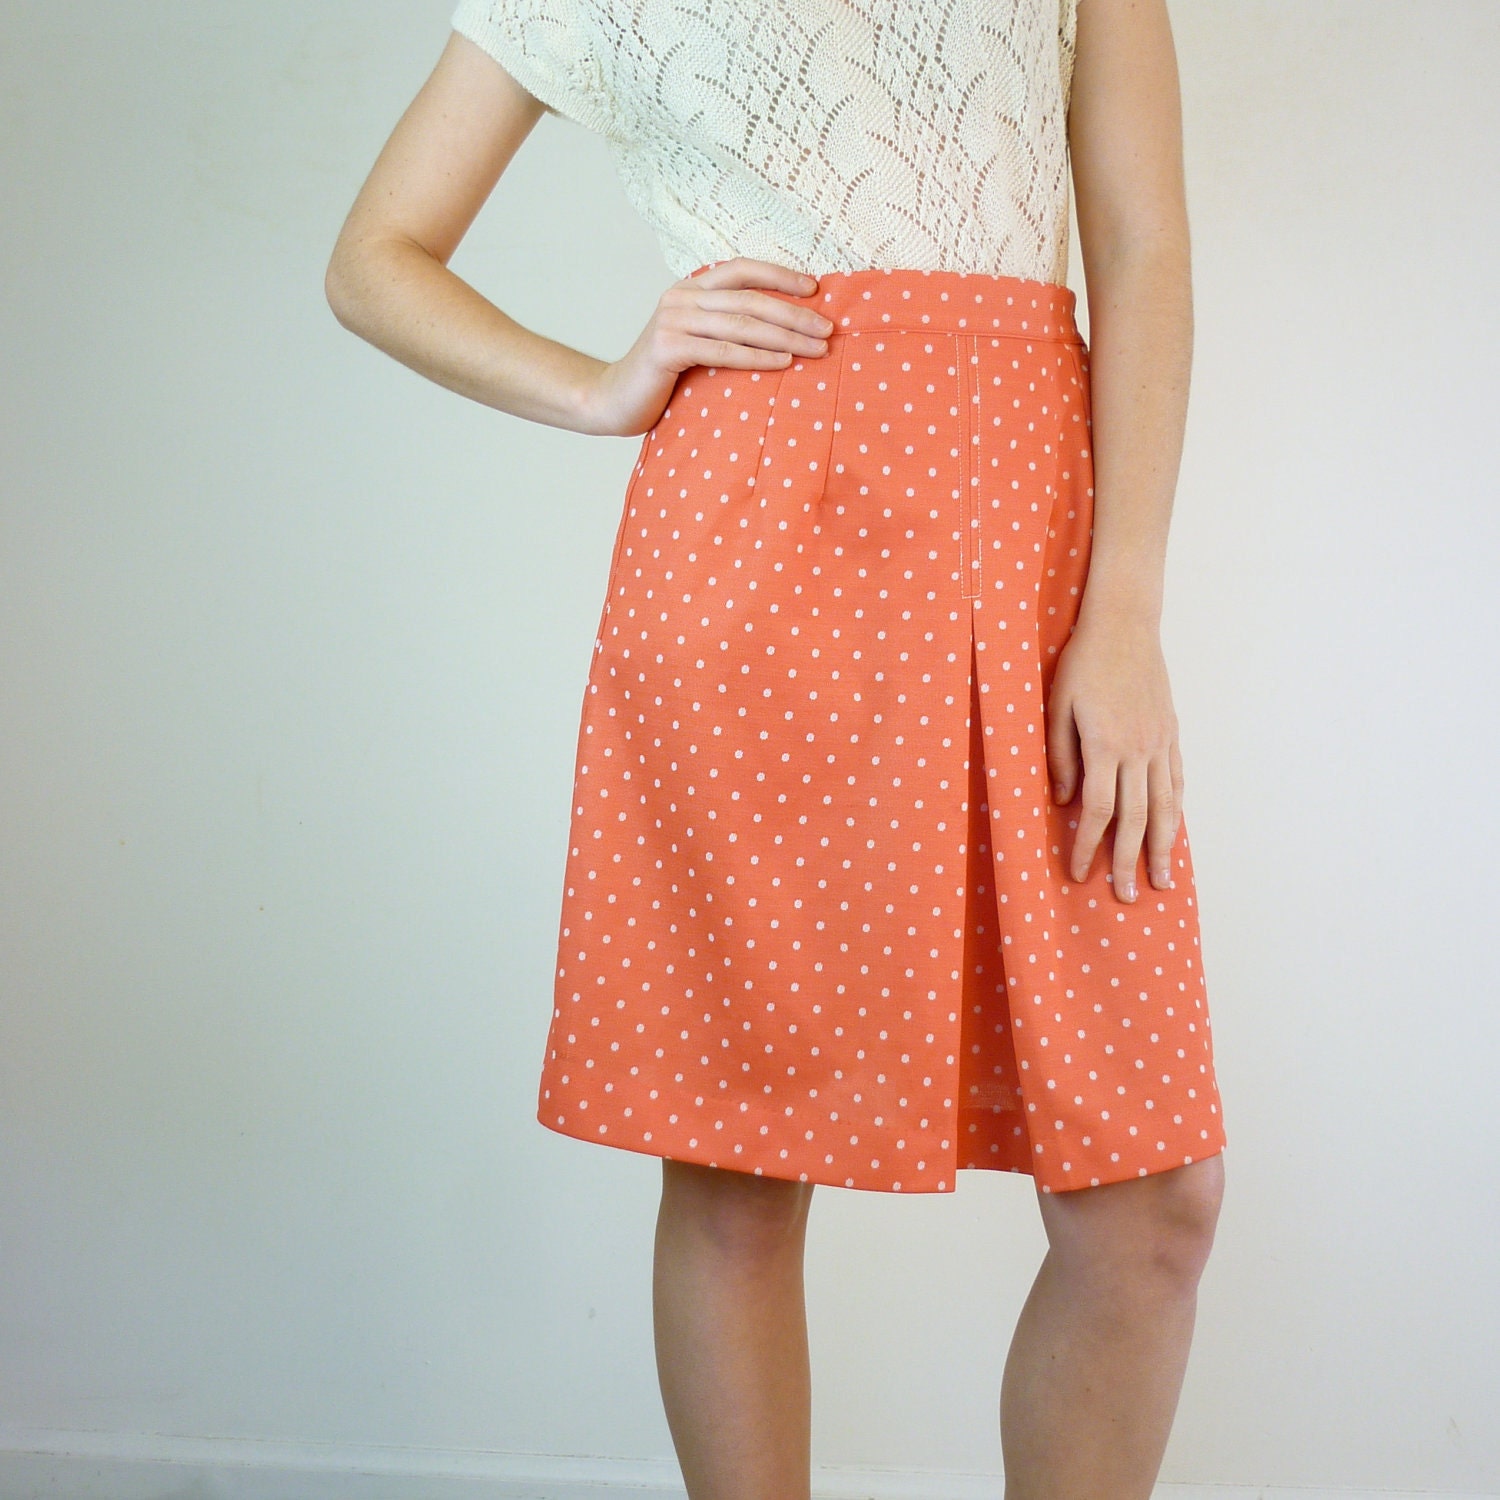 Vintage 1960s Skirt / 60s Skirt / Polka Dot Skirt by jessjamesjake